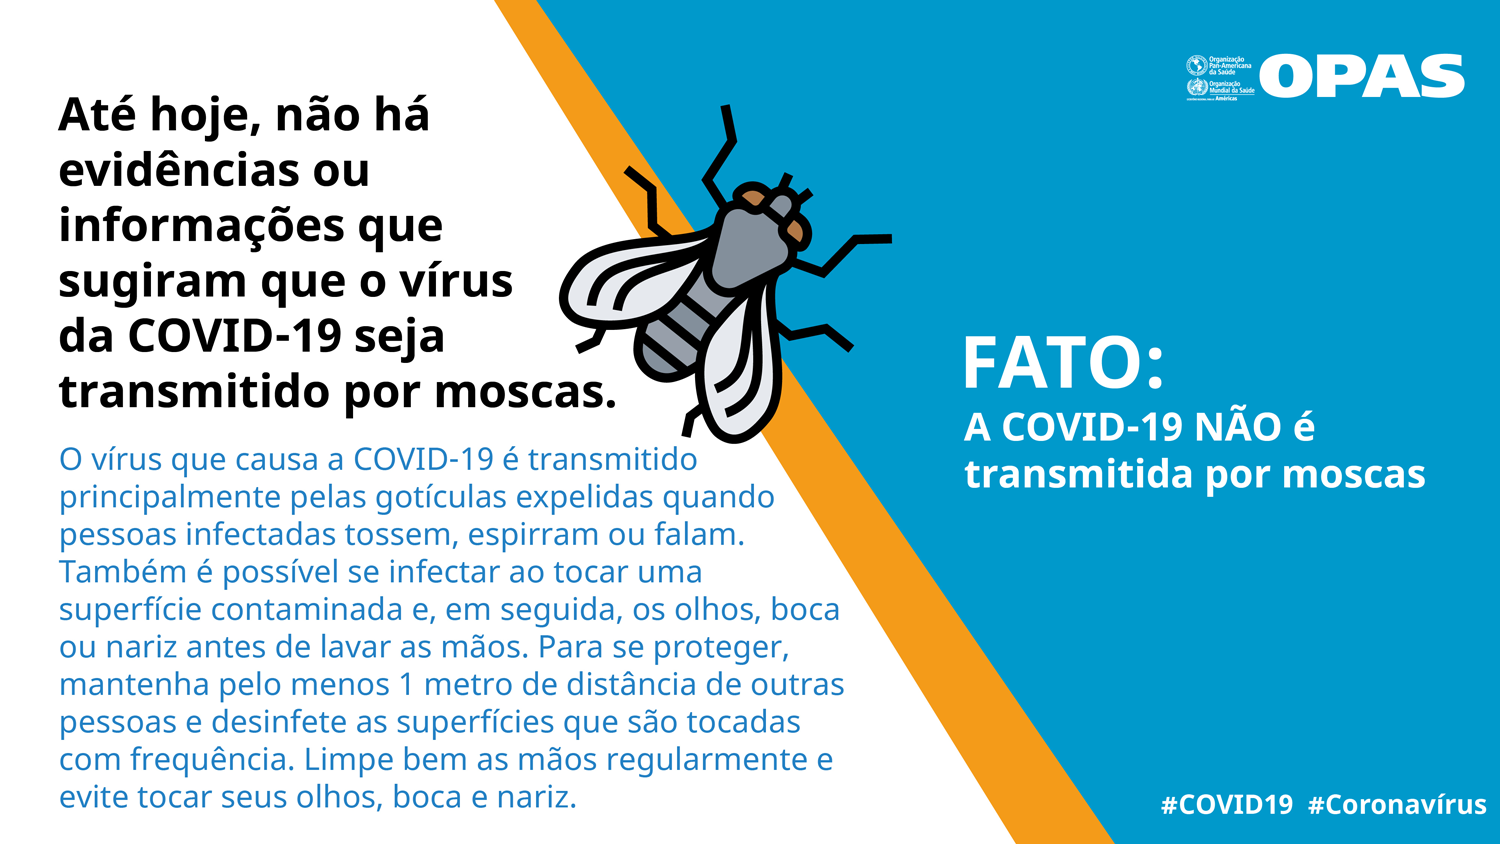 FATO: A COVID-19 NÃO é transmitida por moscas